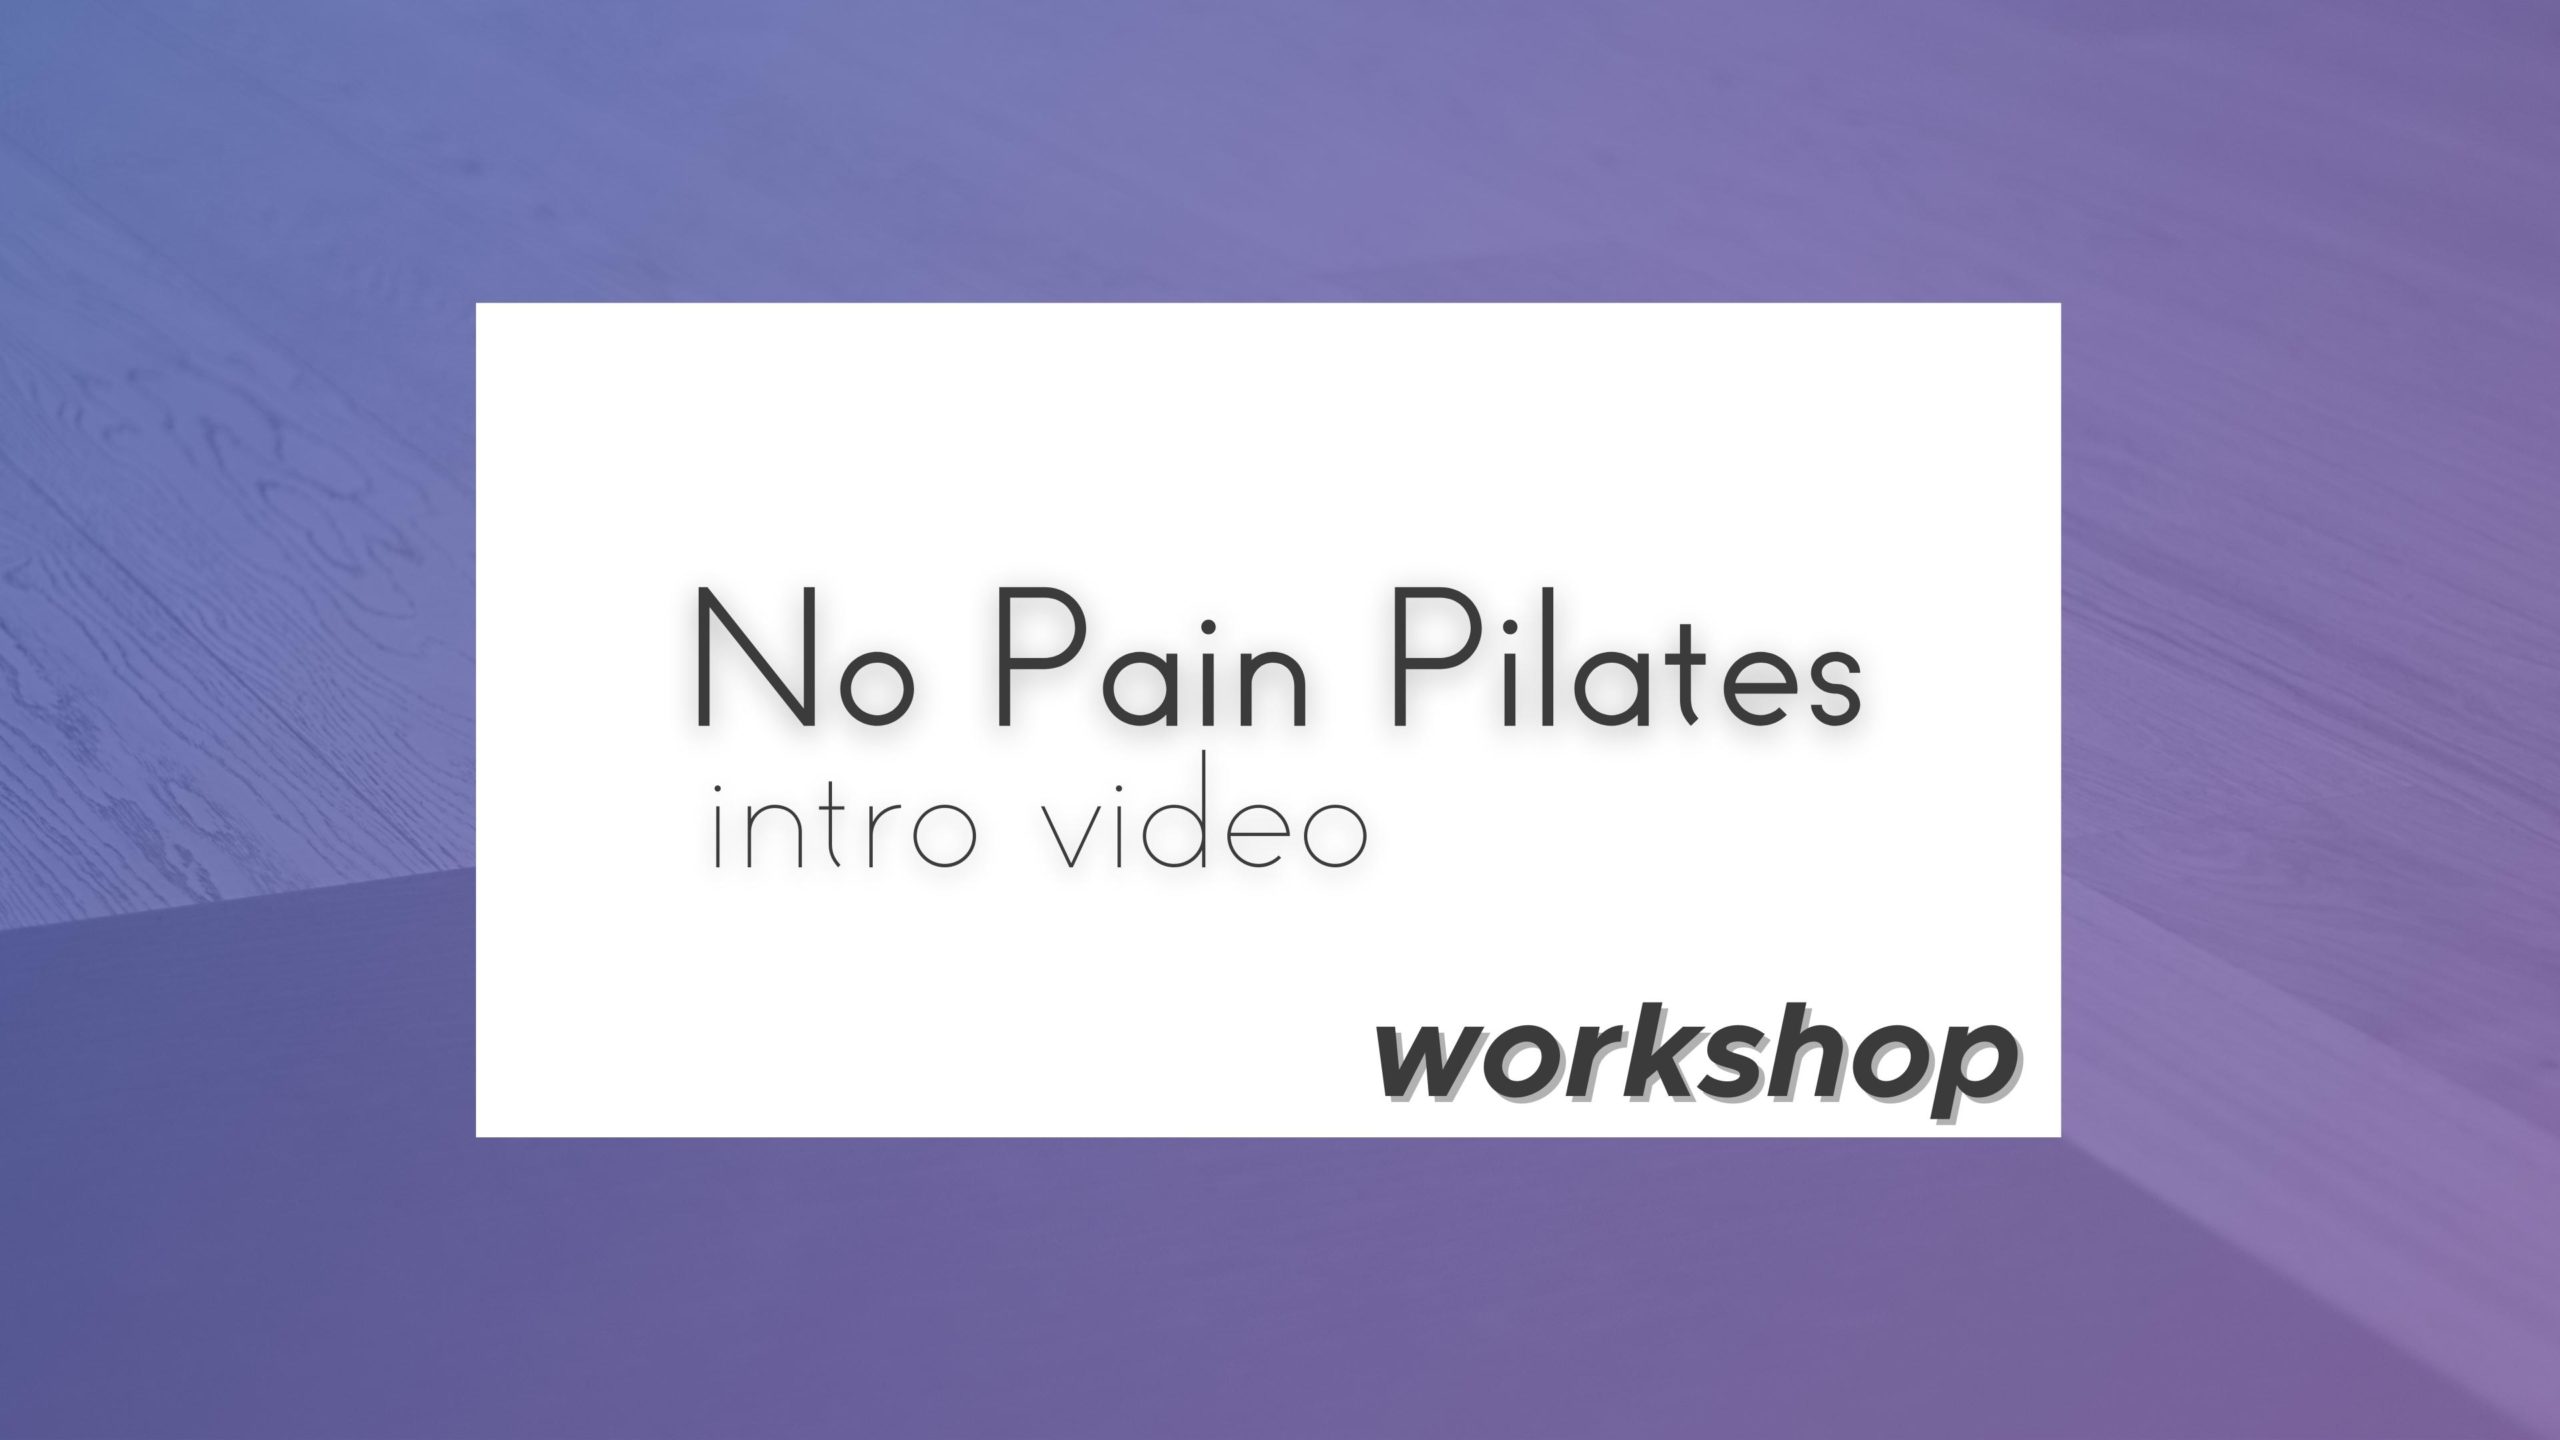 No Pain Pilates